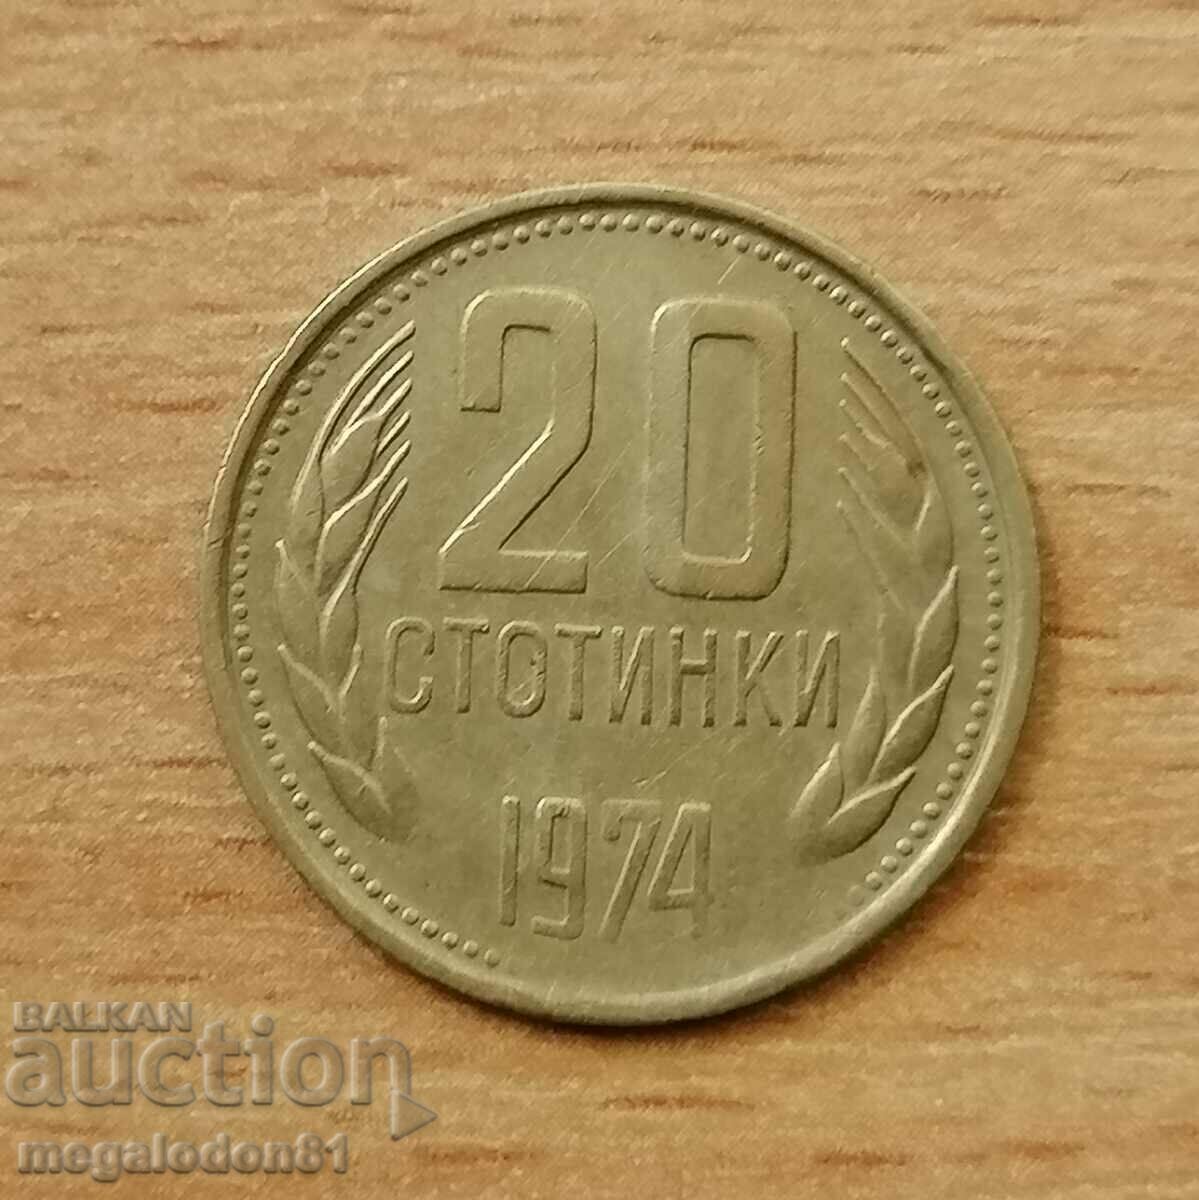 Bulgaria - 20 cents 1974, curiosity,